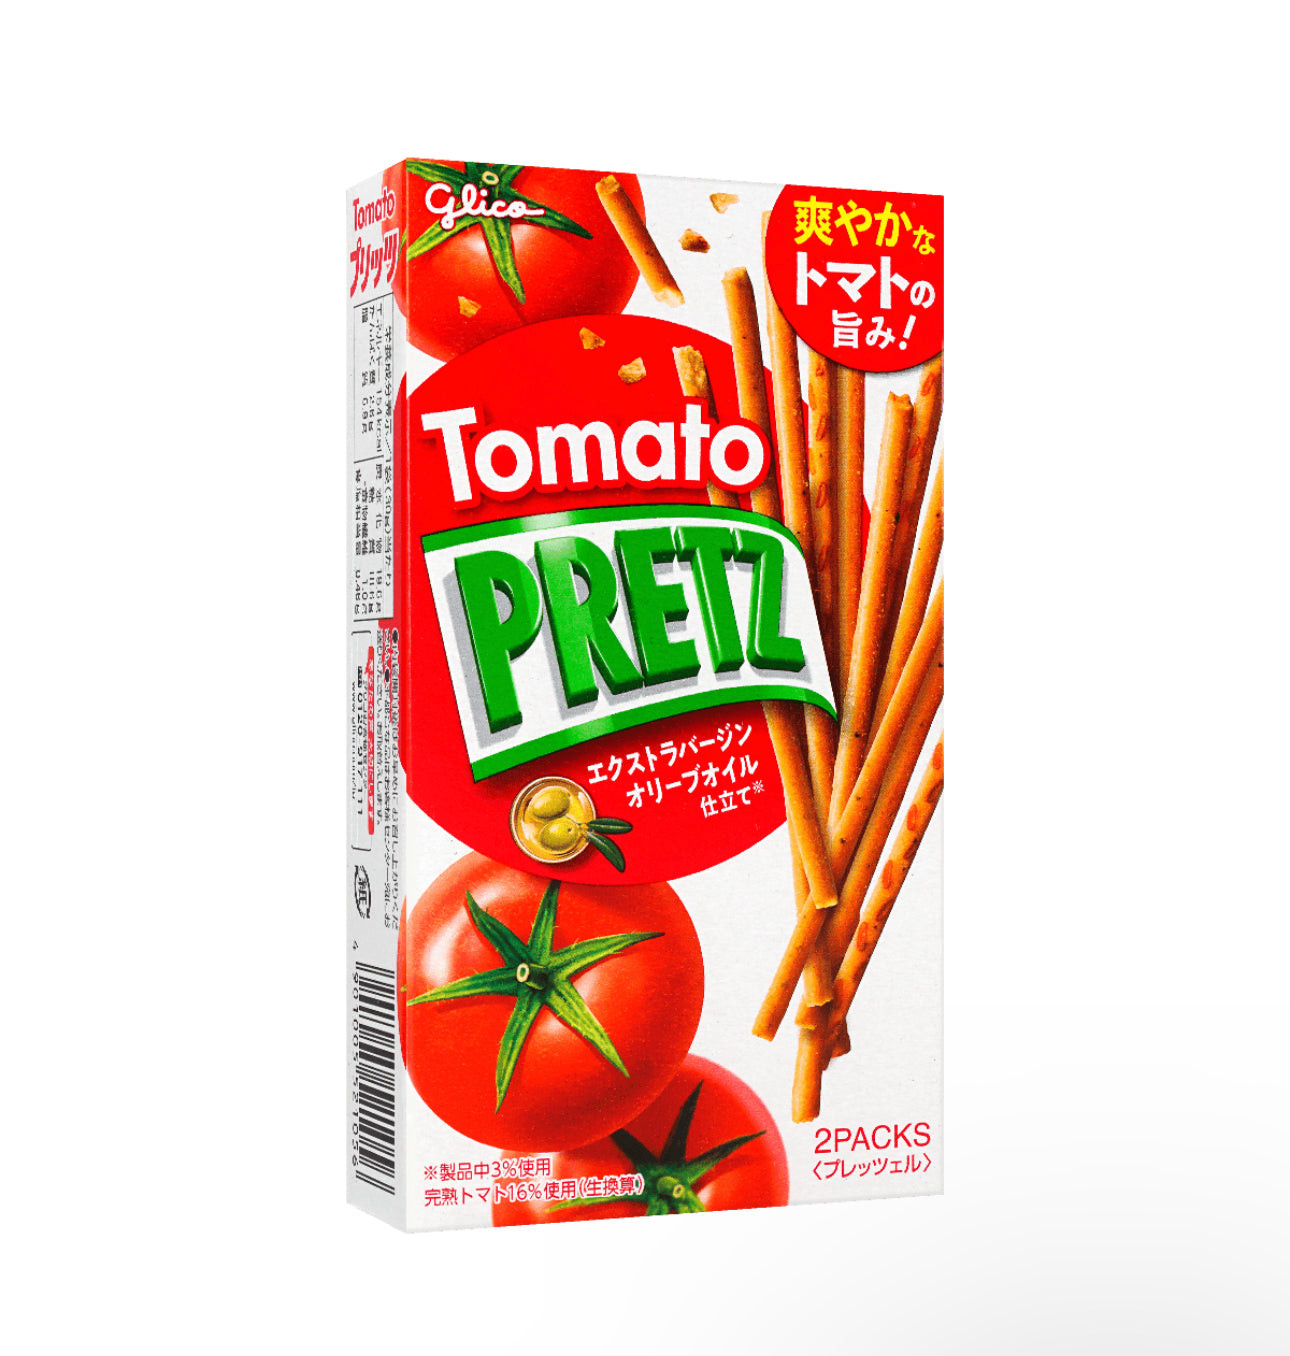 Tomato Pretz